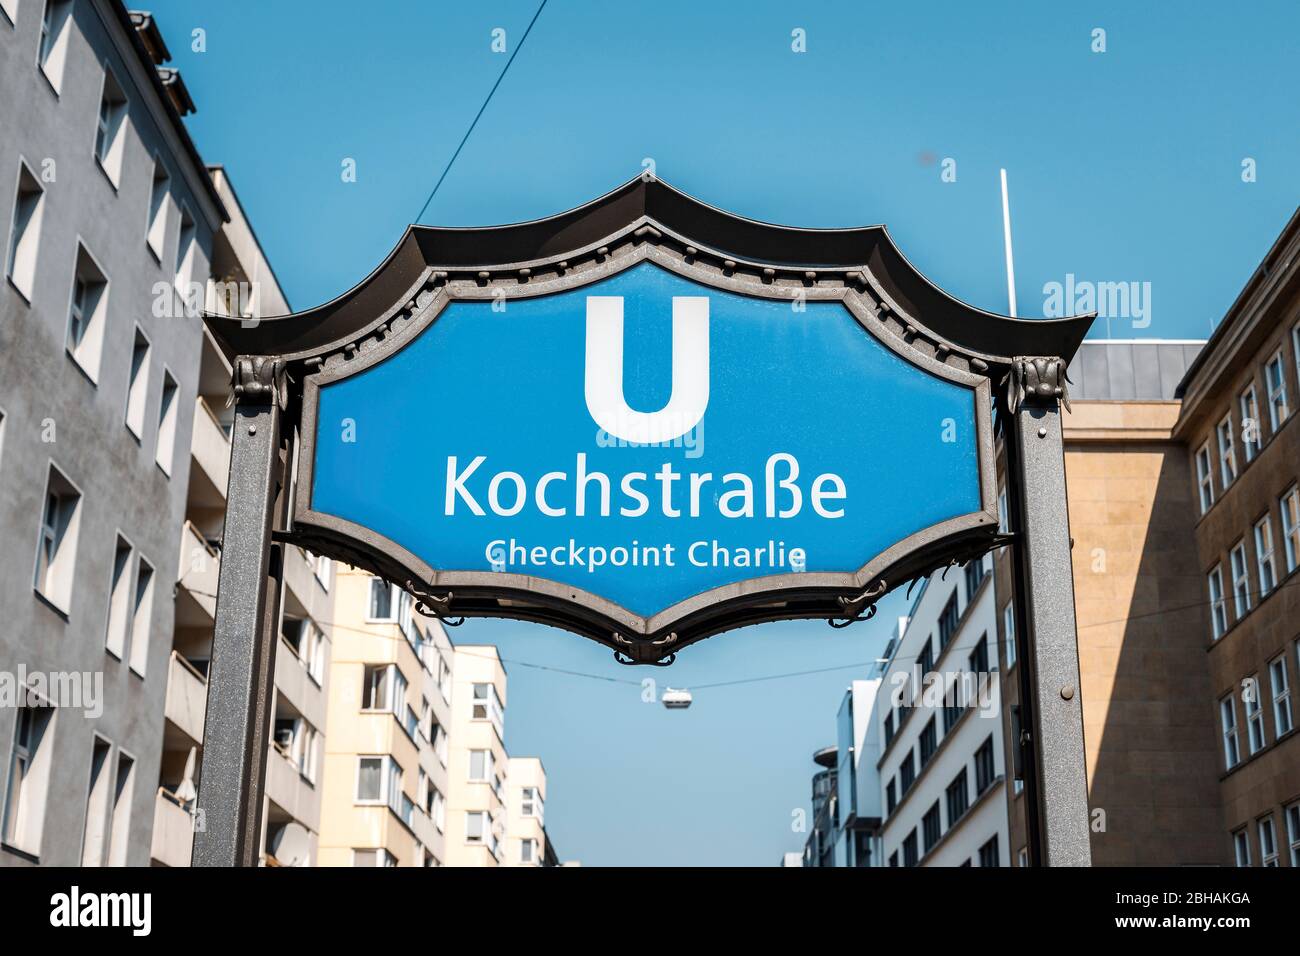 Hinweisschild der U-Bahn Berlin: Kochstraße, Ausgang Checkpoint Charlie. Stock Photo